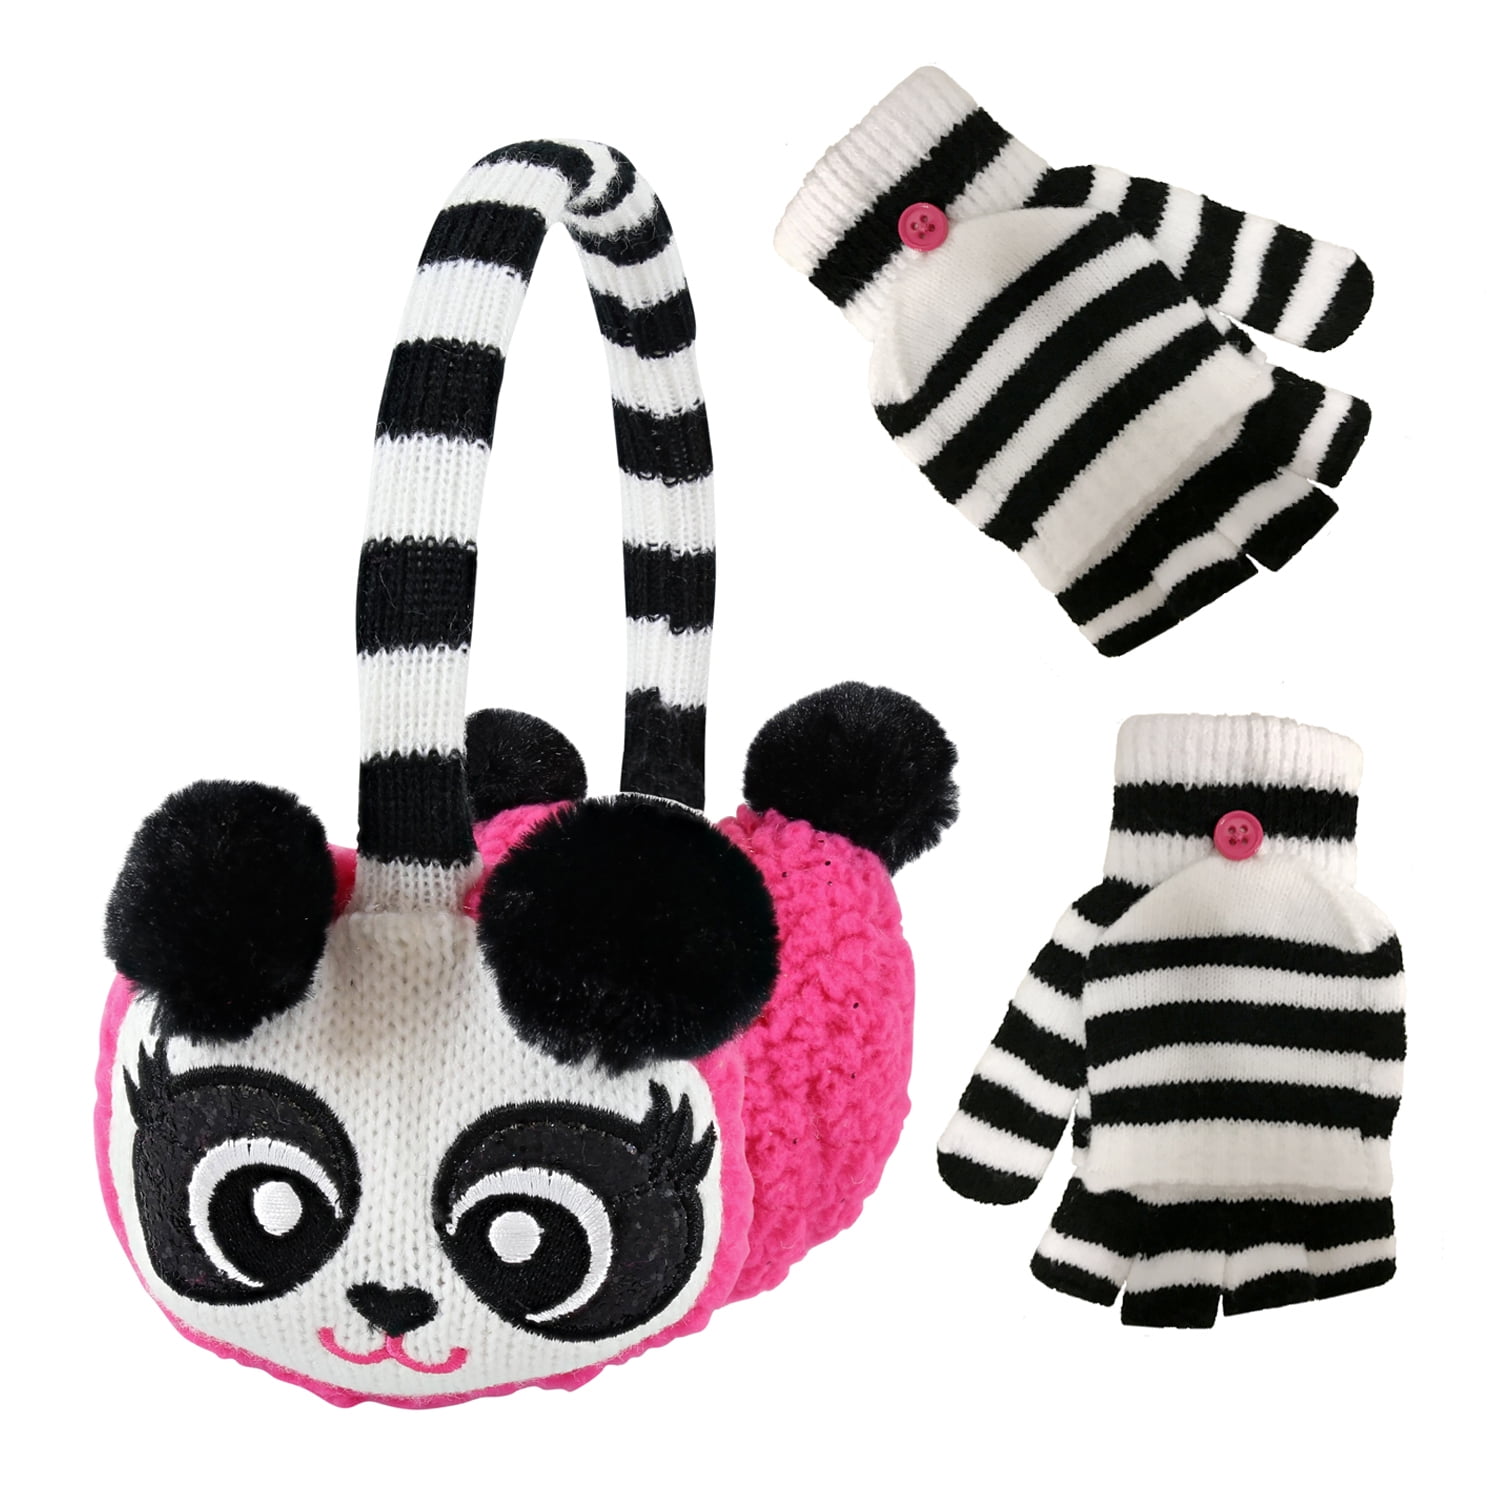 PEAK 2 PEAK Girls Knitted Panda Earmuff Glove Set 